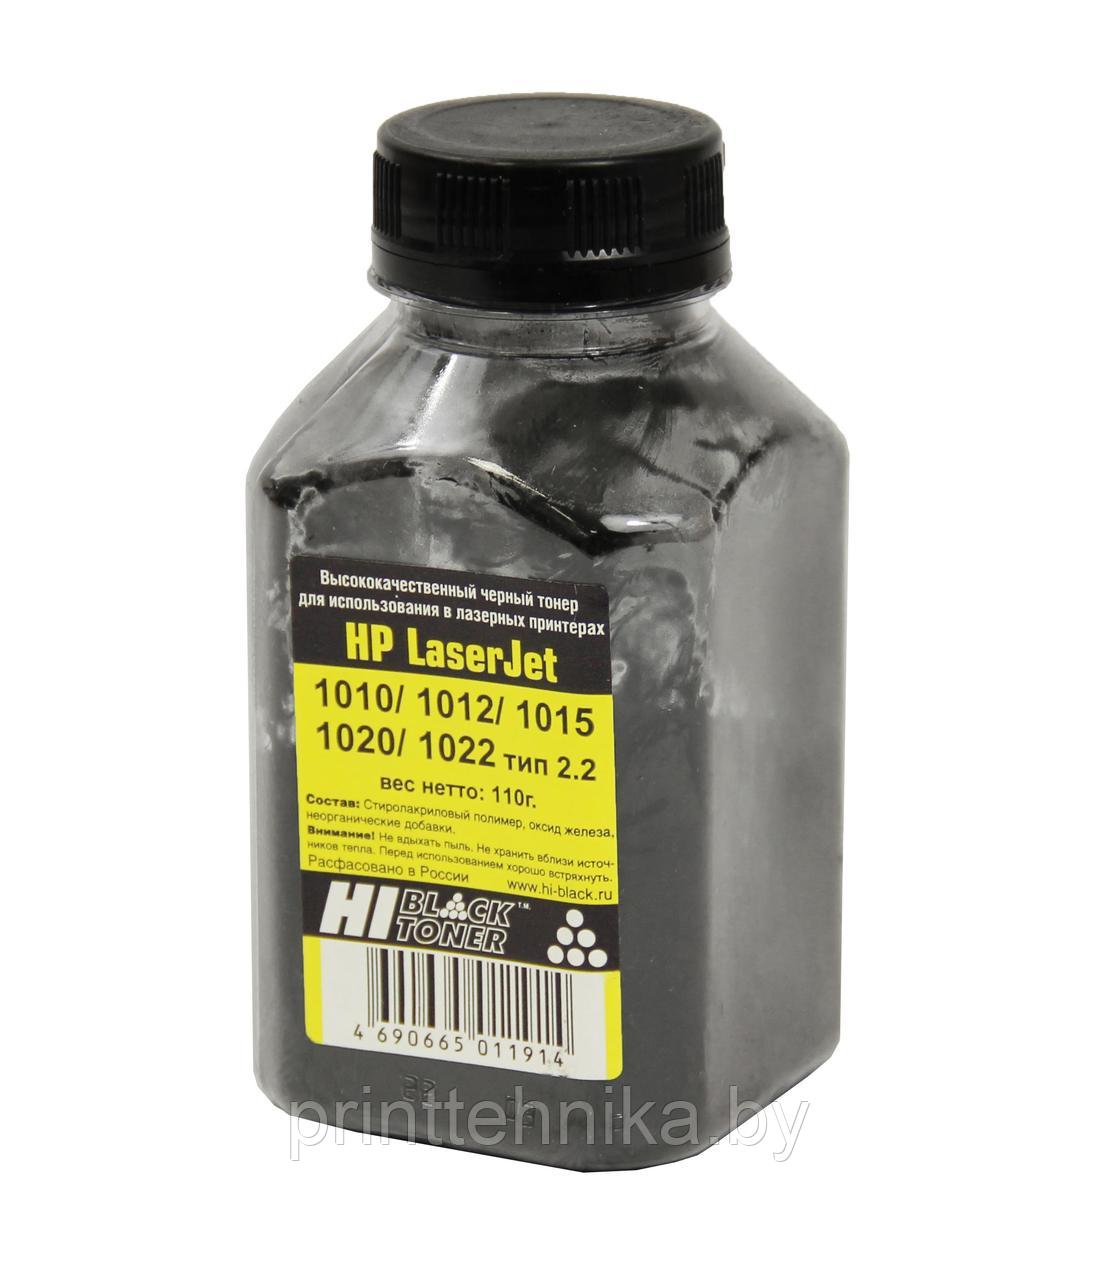 Тонер Hi-Black для HP LJ 1010/1012/1015/1020/1022, Тип 2.2, Bk, 110 г, банка